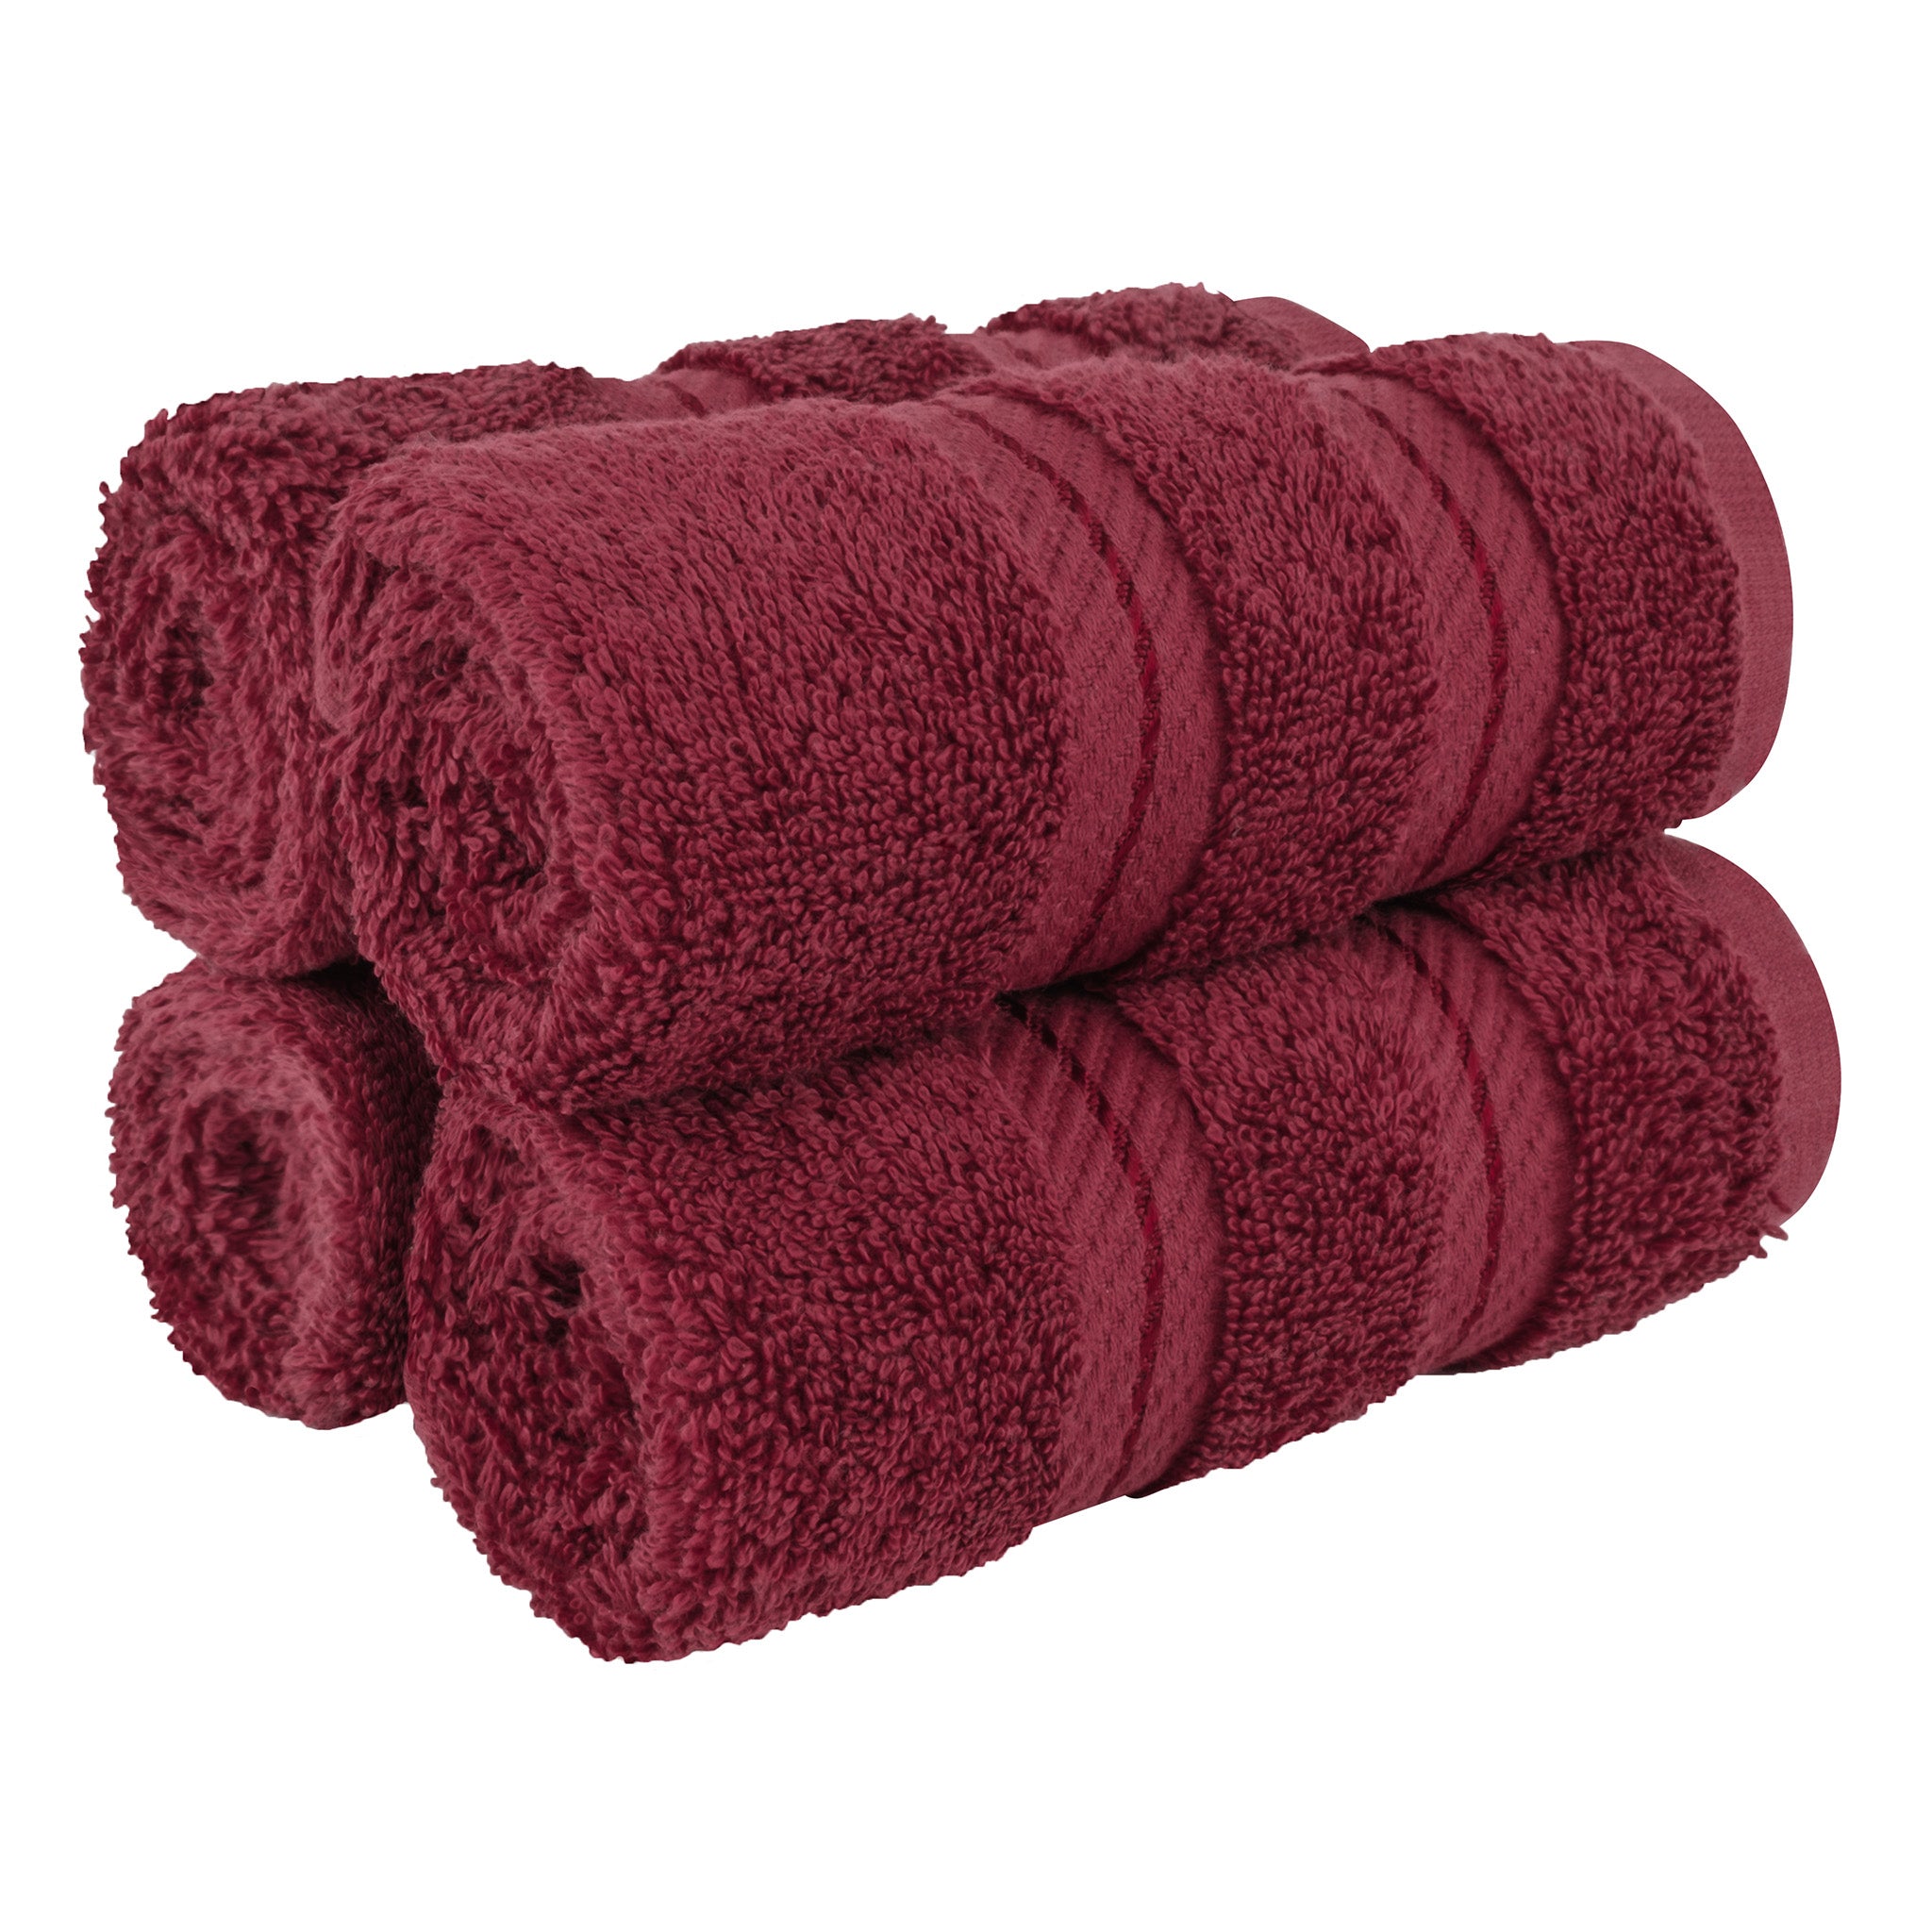  American Soft Linen 100% Turkish Cotton 4 Piece Washcloth Set - Wholesale - bordeaux-red-1